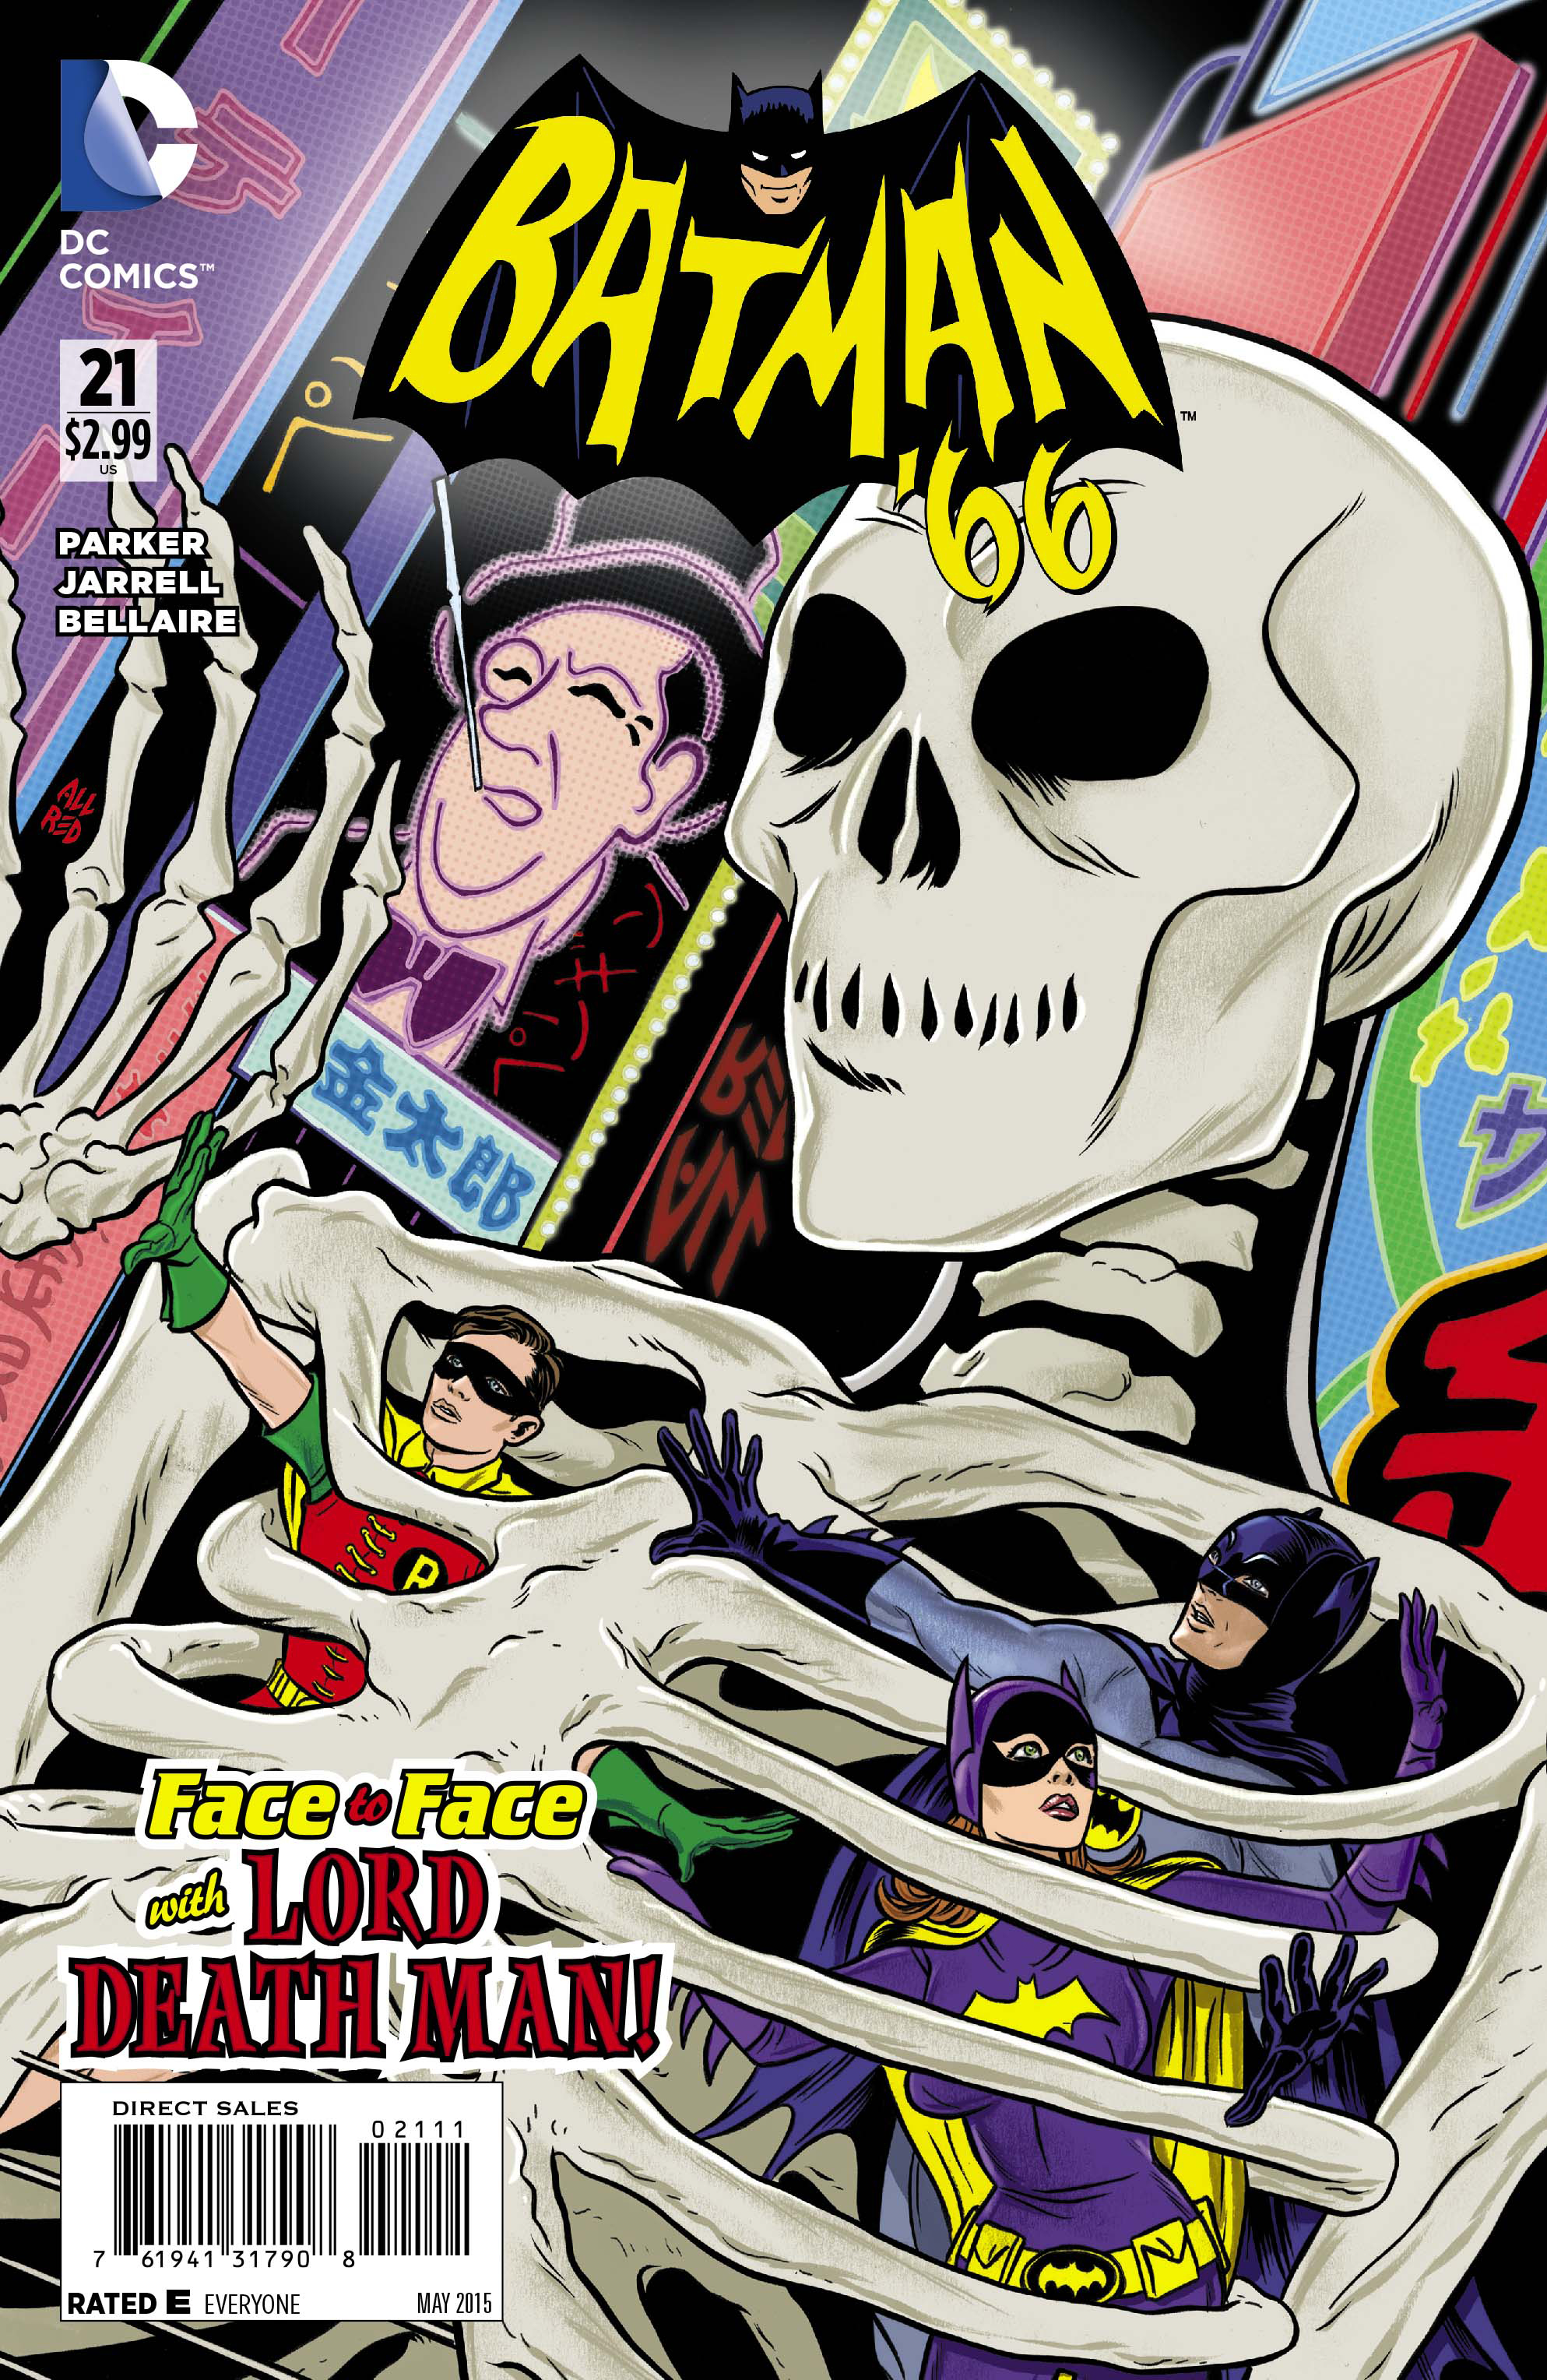 JAN150353 - BATMAN 66 #21 - Previews World